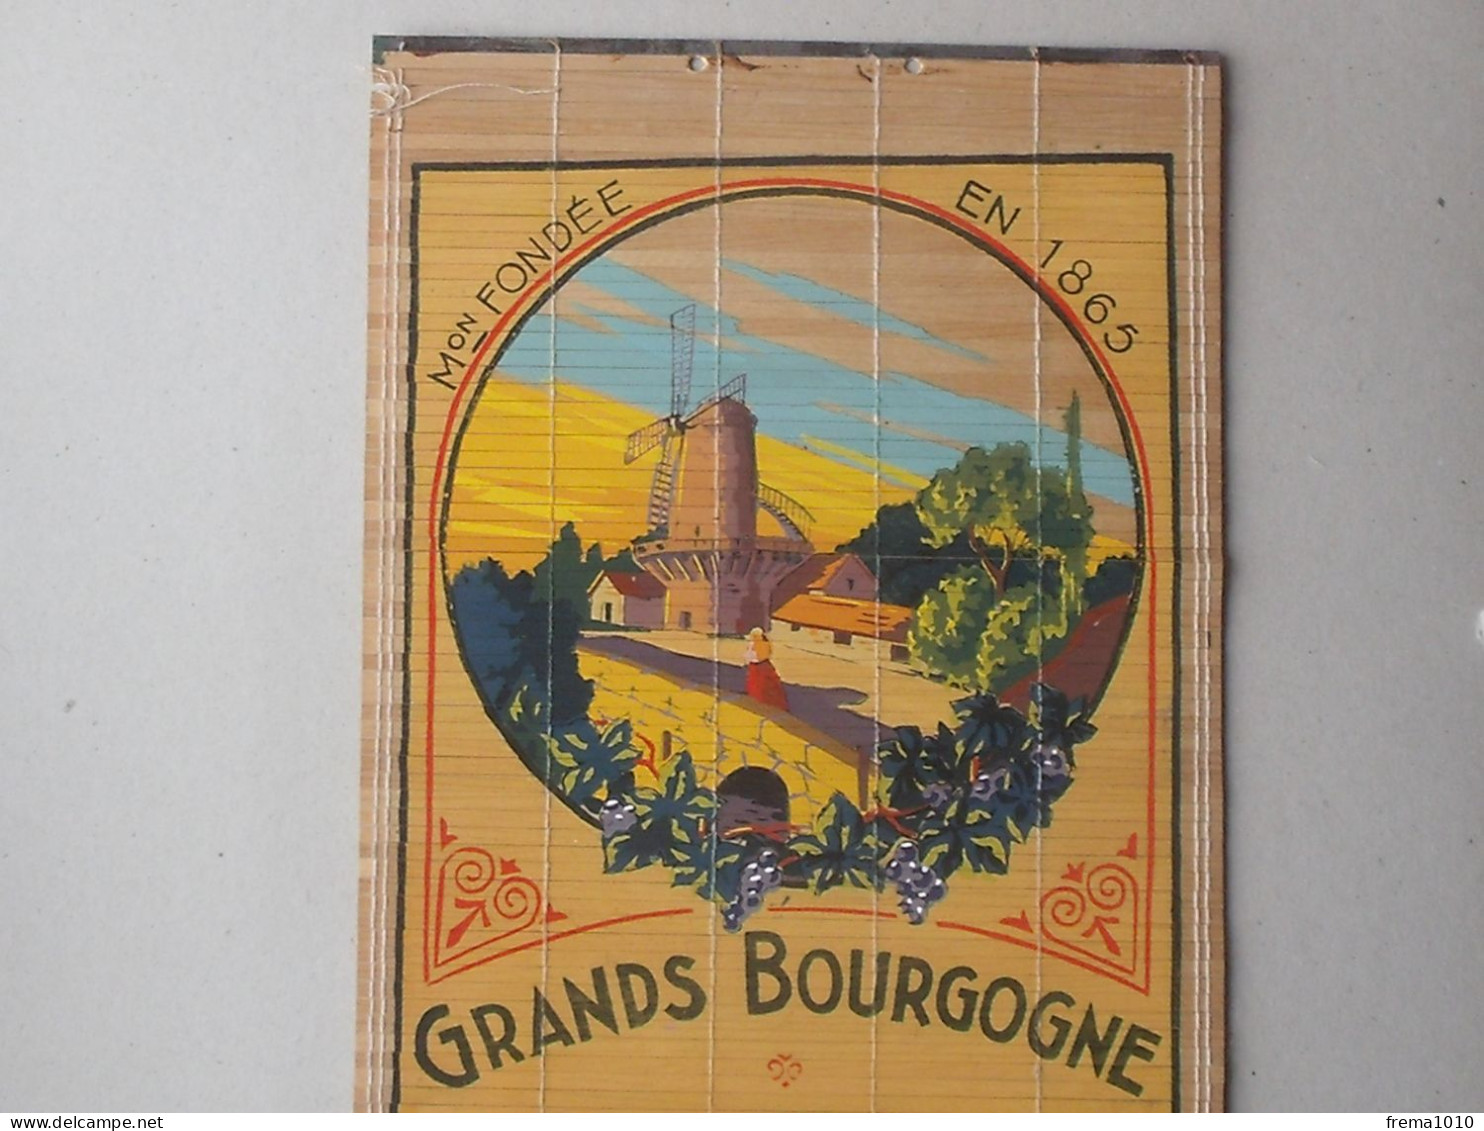 ROMANECHE-THORENS CHENAS: Store Publicitaire Ancien VIN MOULIN A VENT Bourgogne MACONNAIS Propr. JAMBON 1865 ROQUIN - Alkohol